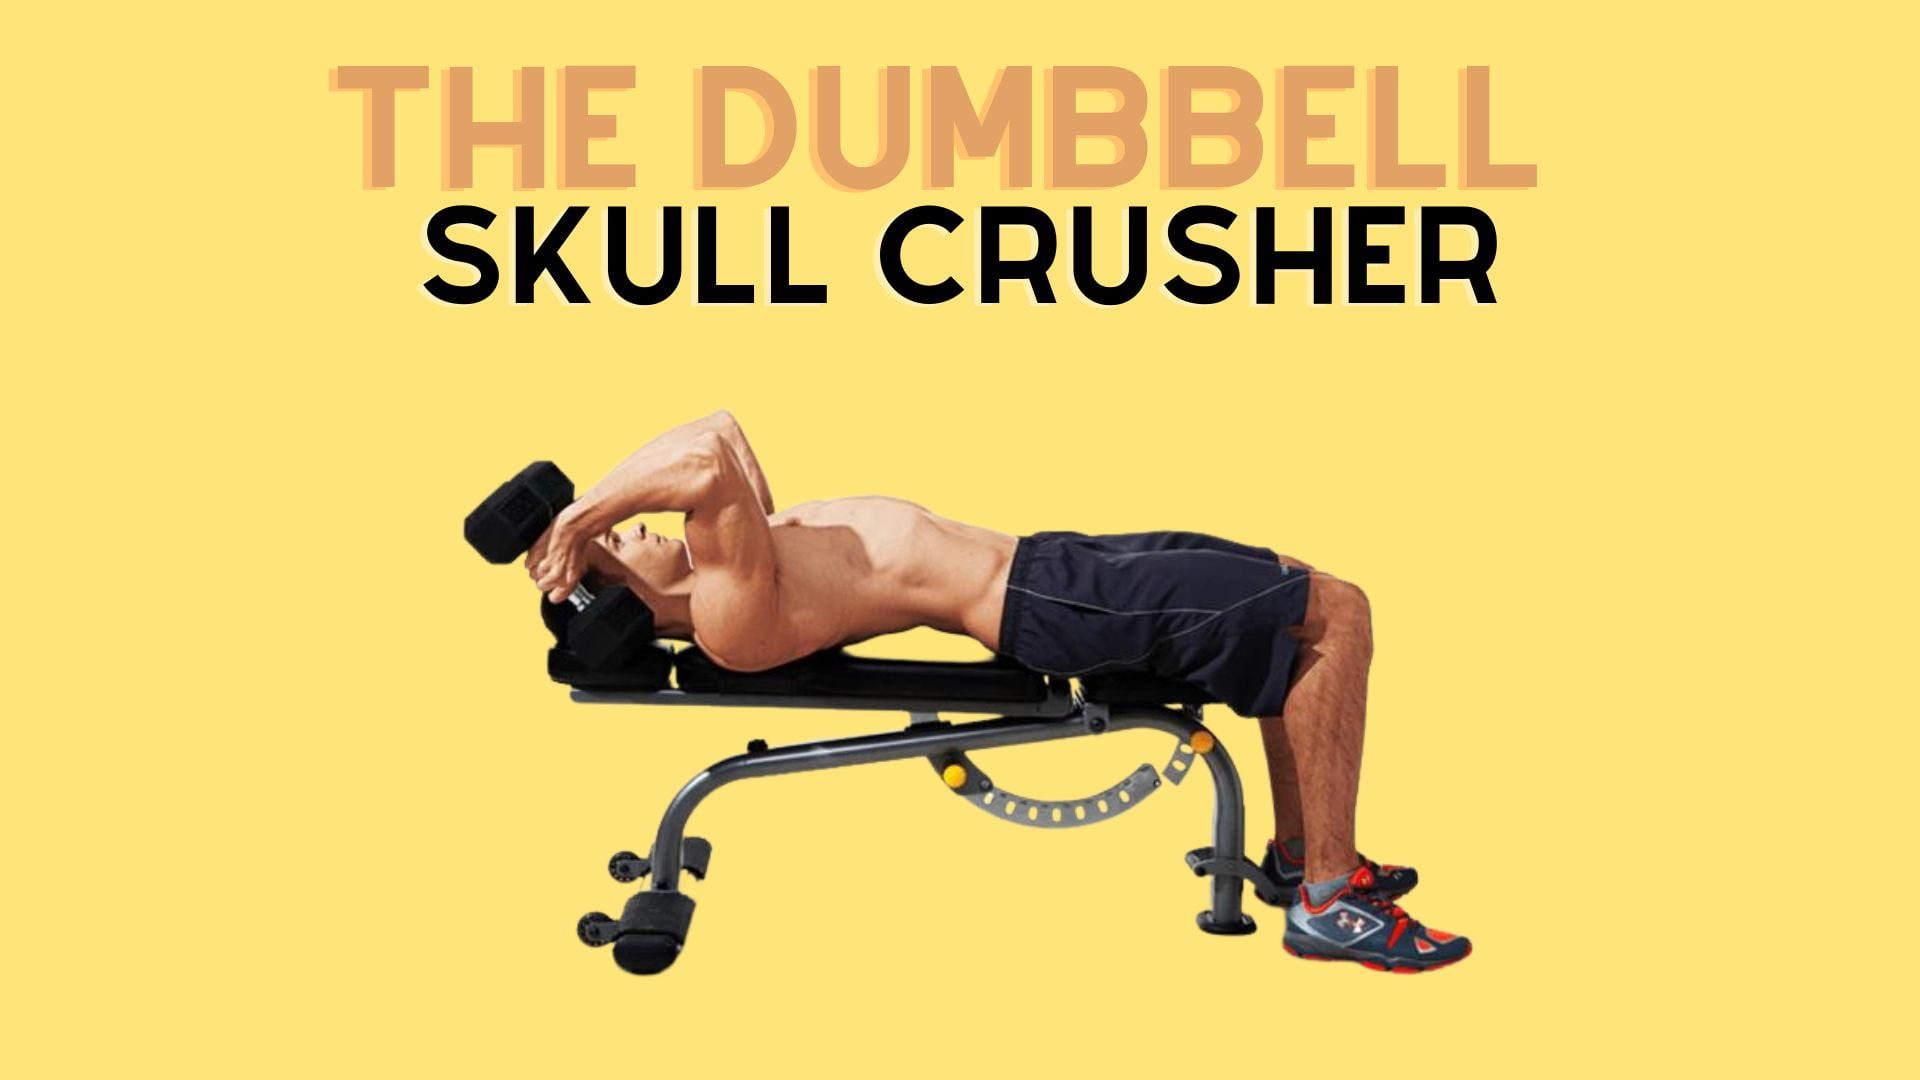 The Dumbbell Skull Crusher